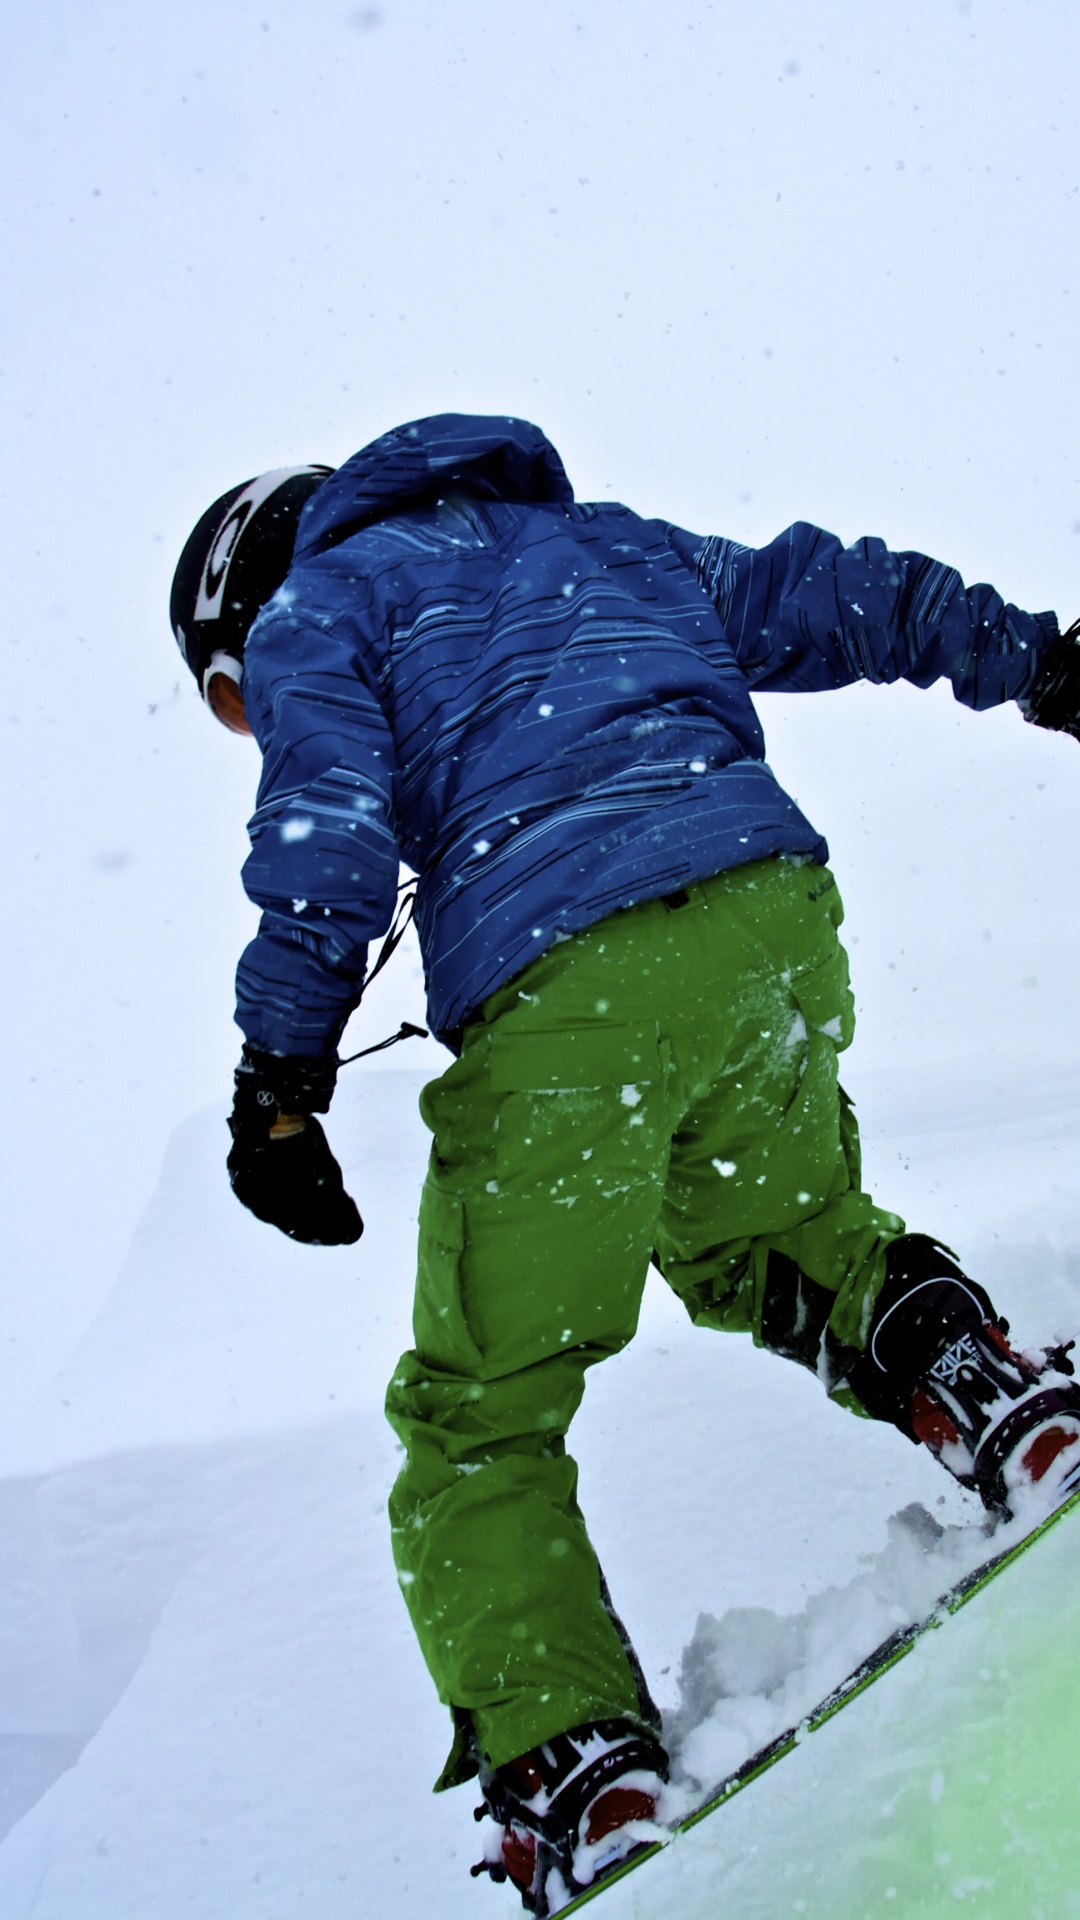 Persona Con Chaqueta Azul y Pantalones Verdes Montados Sobre Palas de Esquí Sobre un Terreno Cubierto. Wallpaper in 1080x1920 Resolution